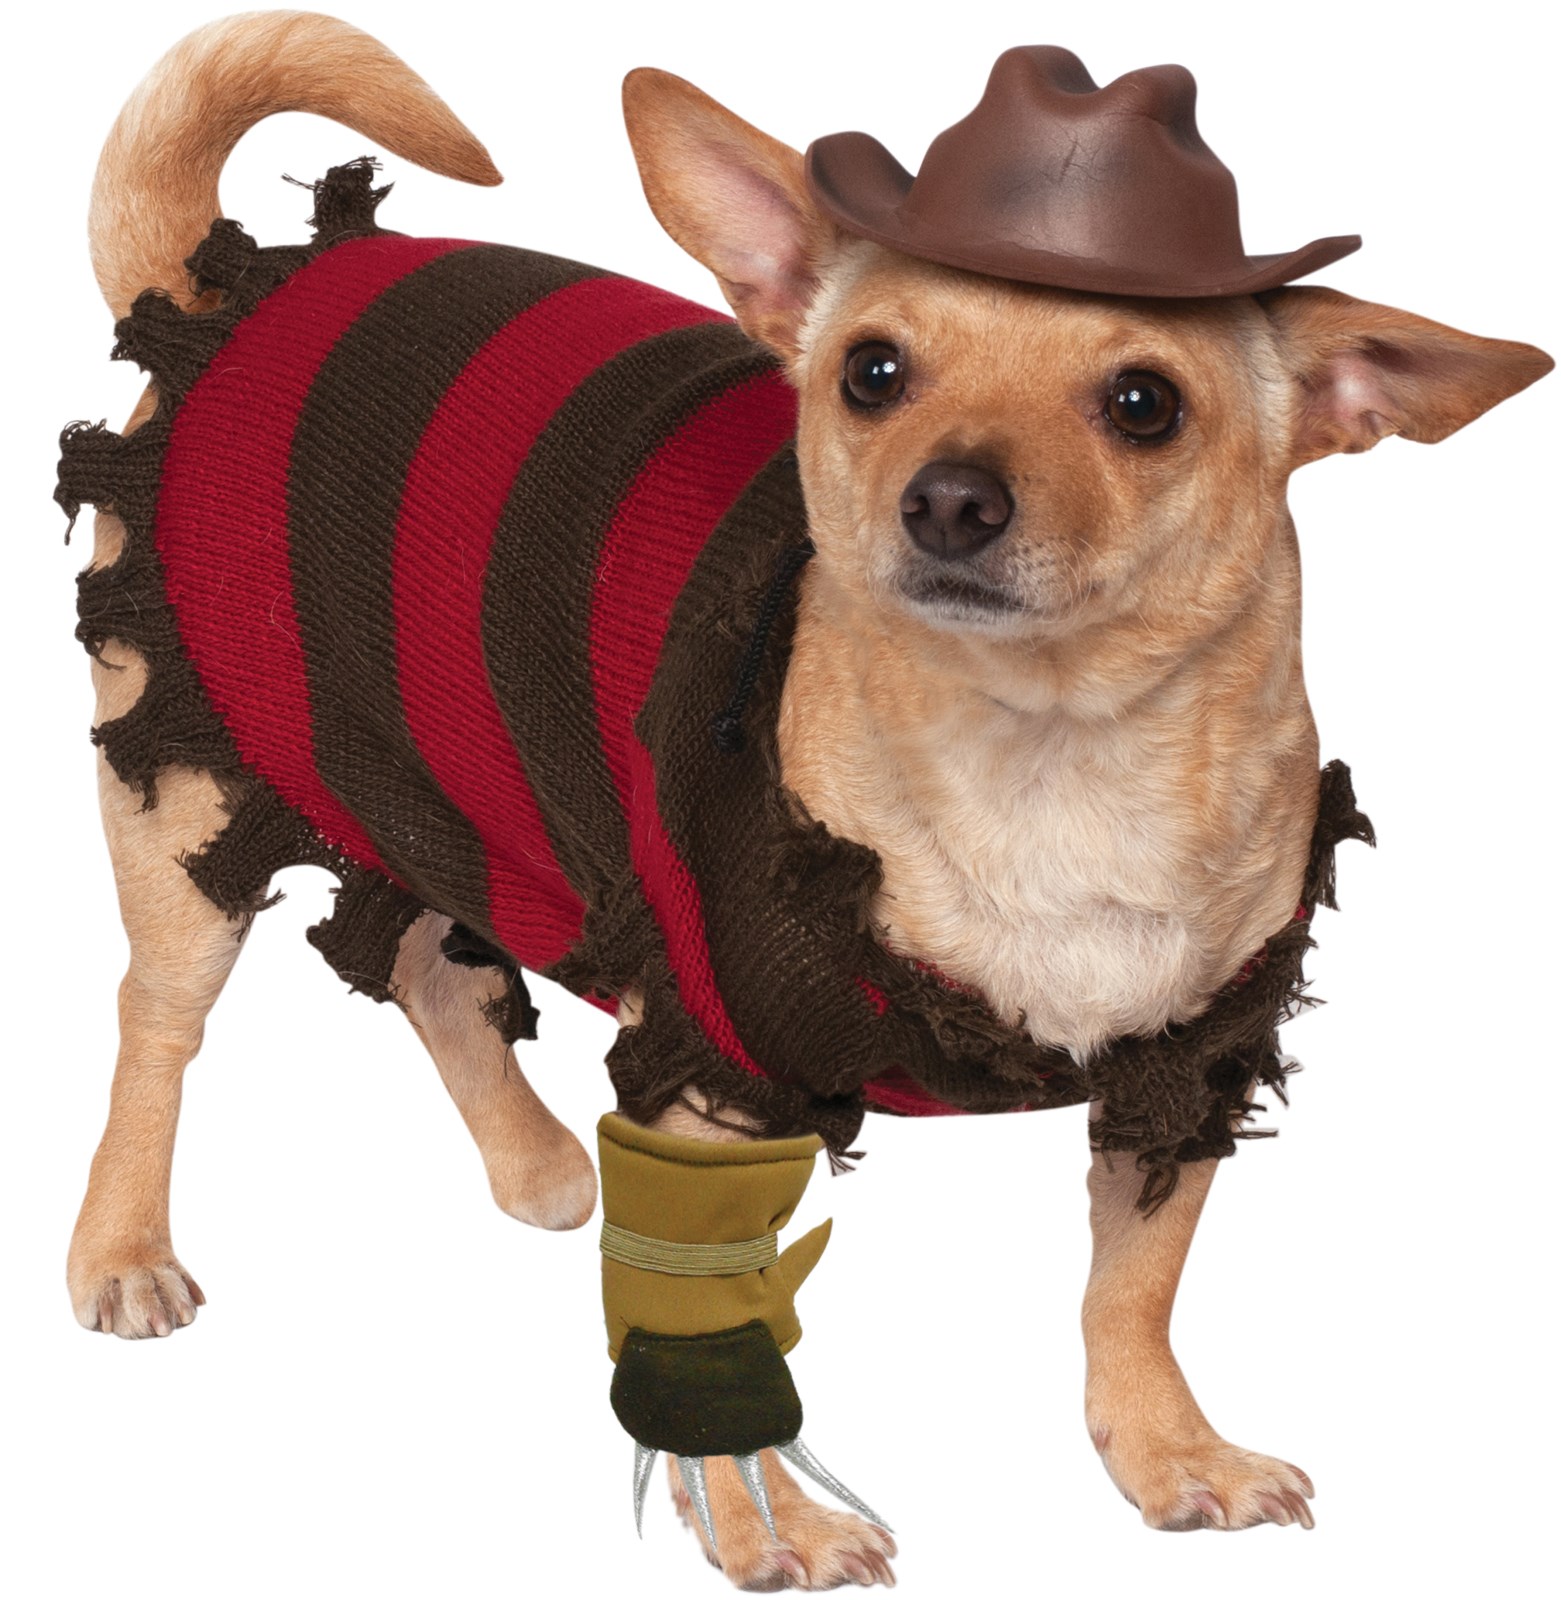 Pet Freddy Kreuger Costume